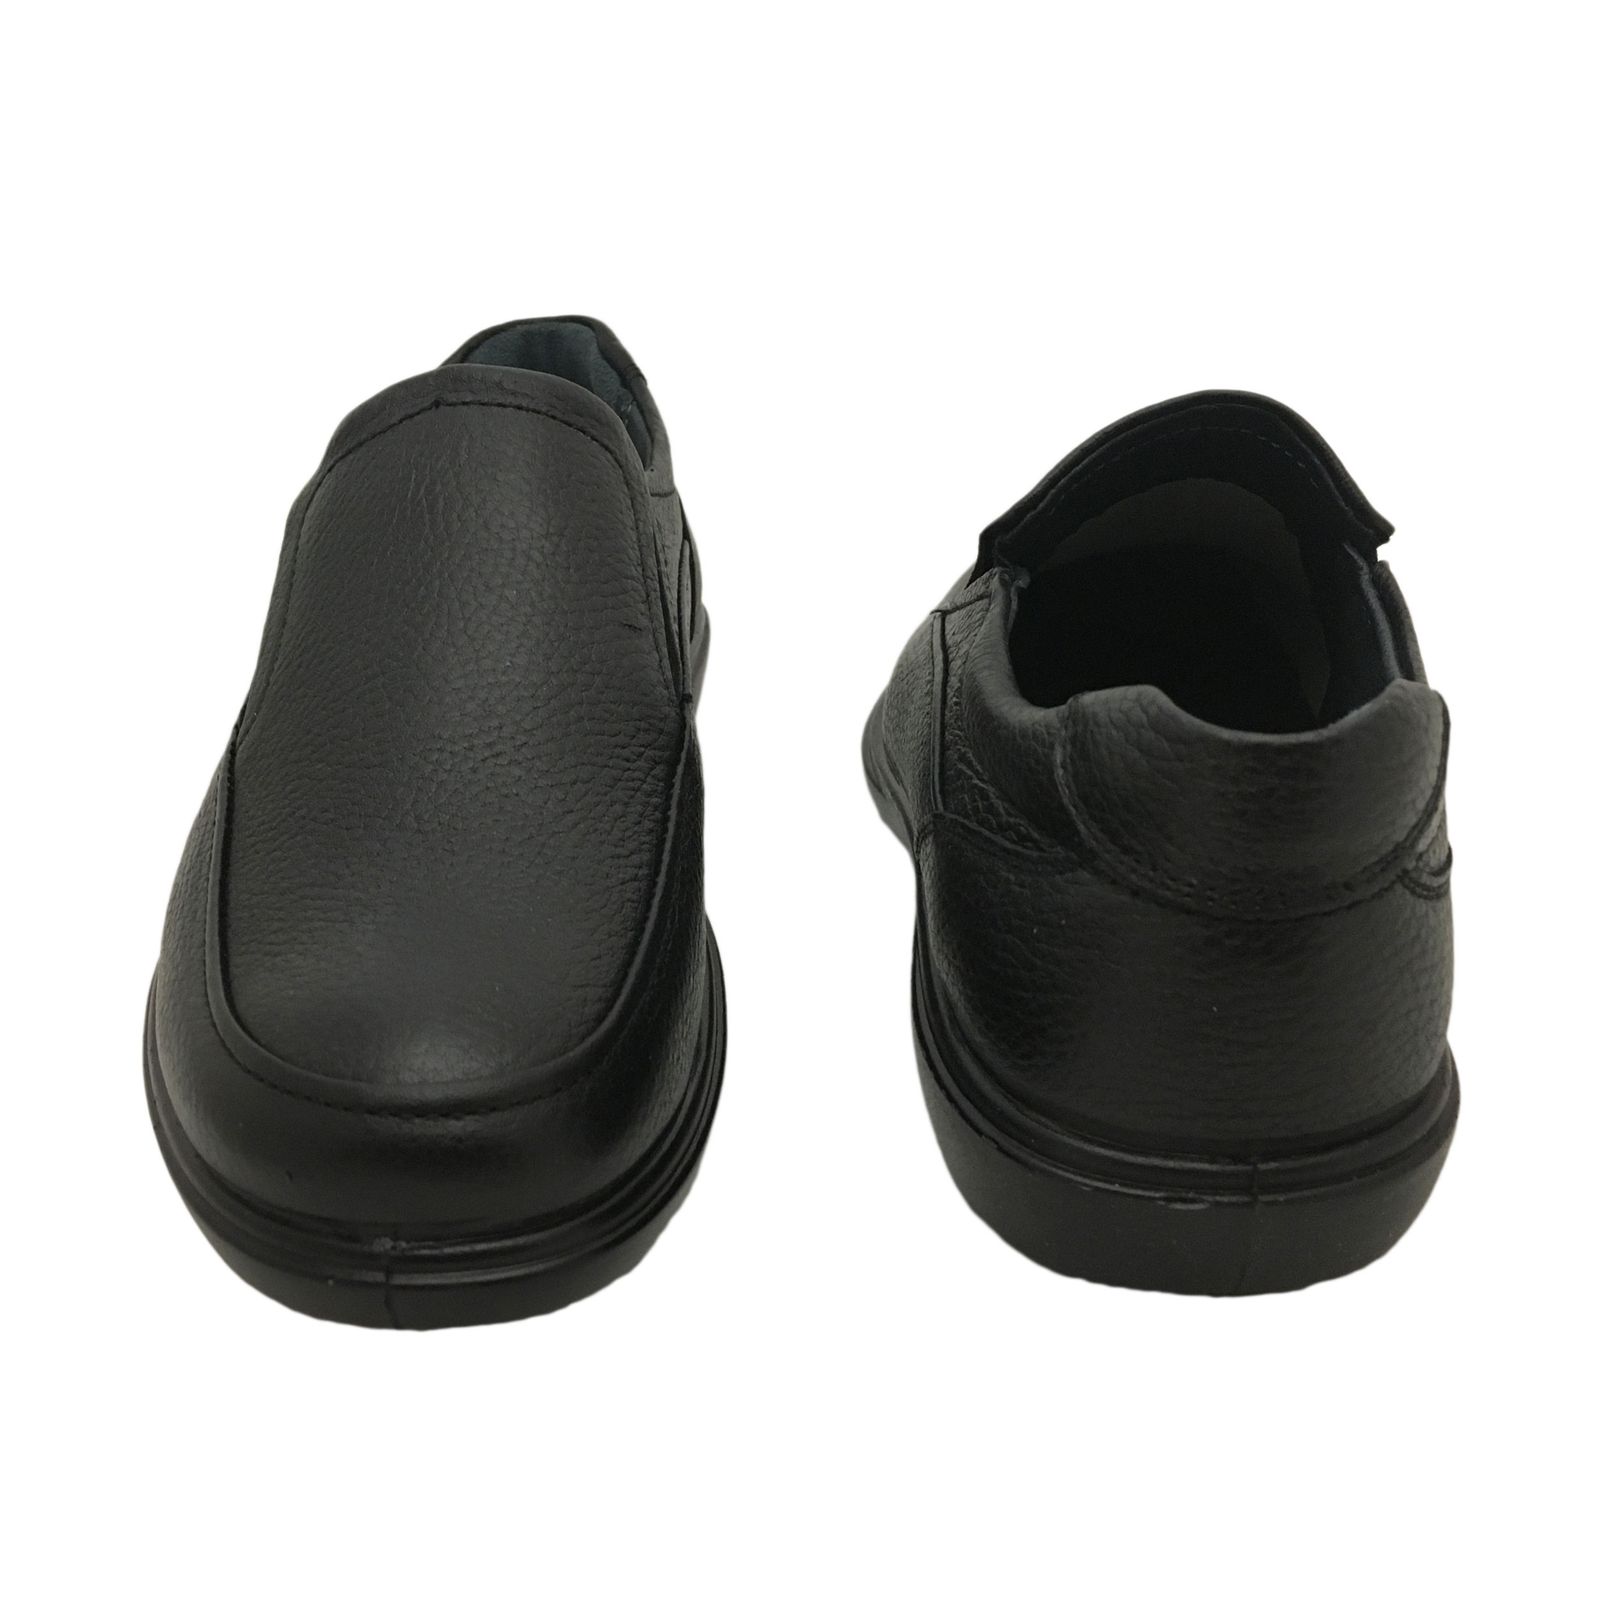 کفش روزمره مردانه شرکت کفش البرز مدل BRS کد 1149-4 -  - 8